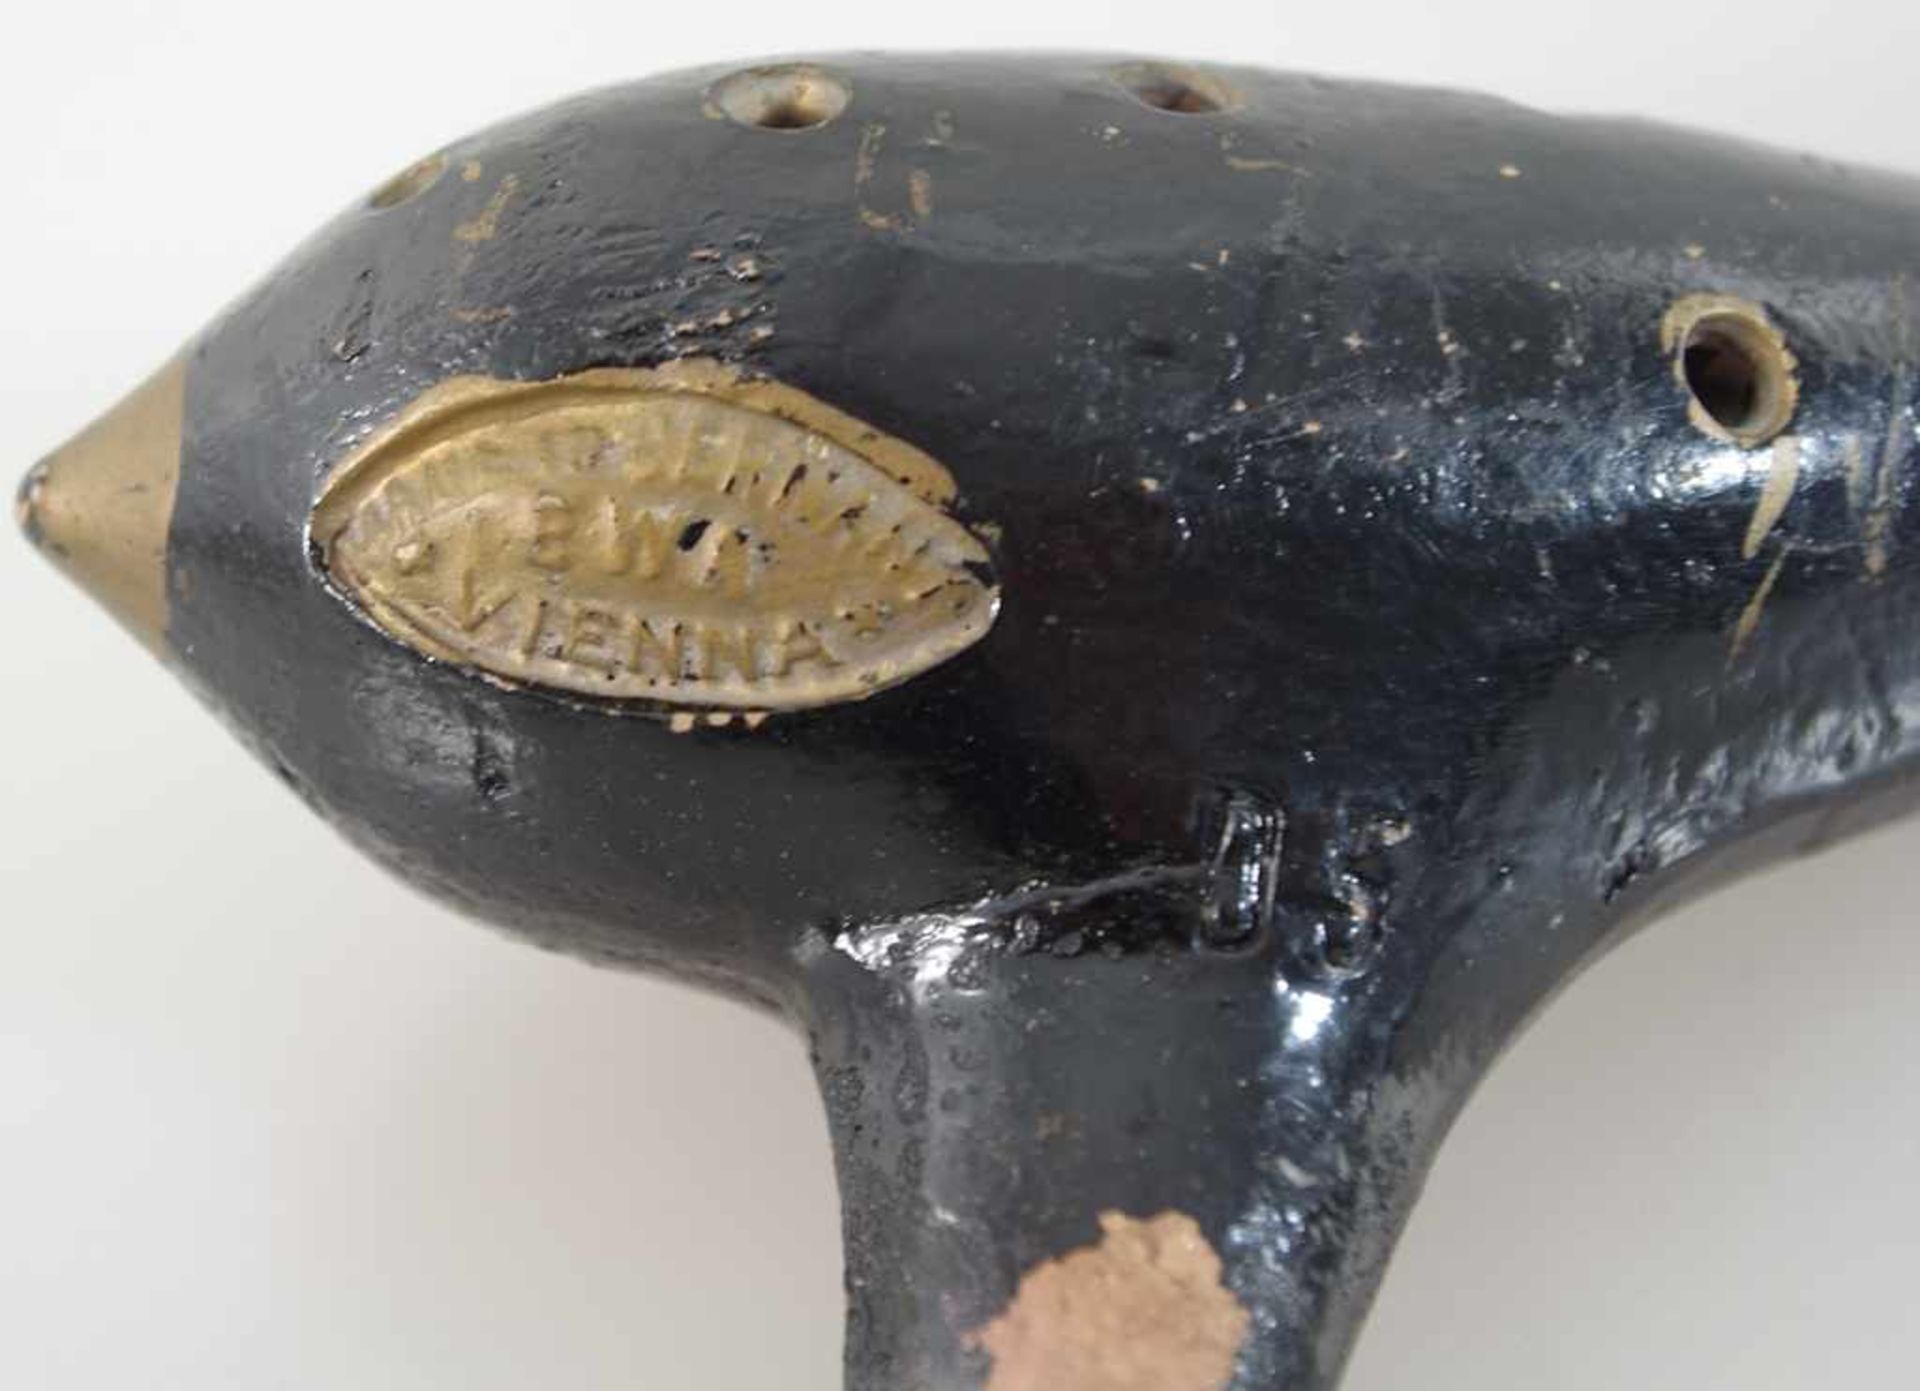 Ocarina (Gefäßflöte), Tonkorpus, gem. Made in Germany EWA Vienna, Gebrauchsspuren, l. ca. 14cm - Image 2 of 2